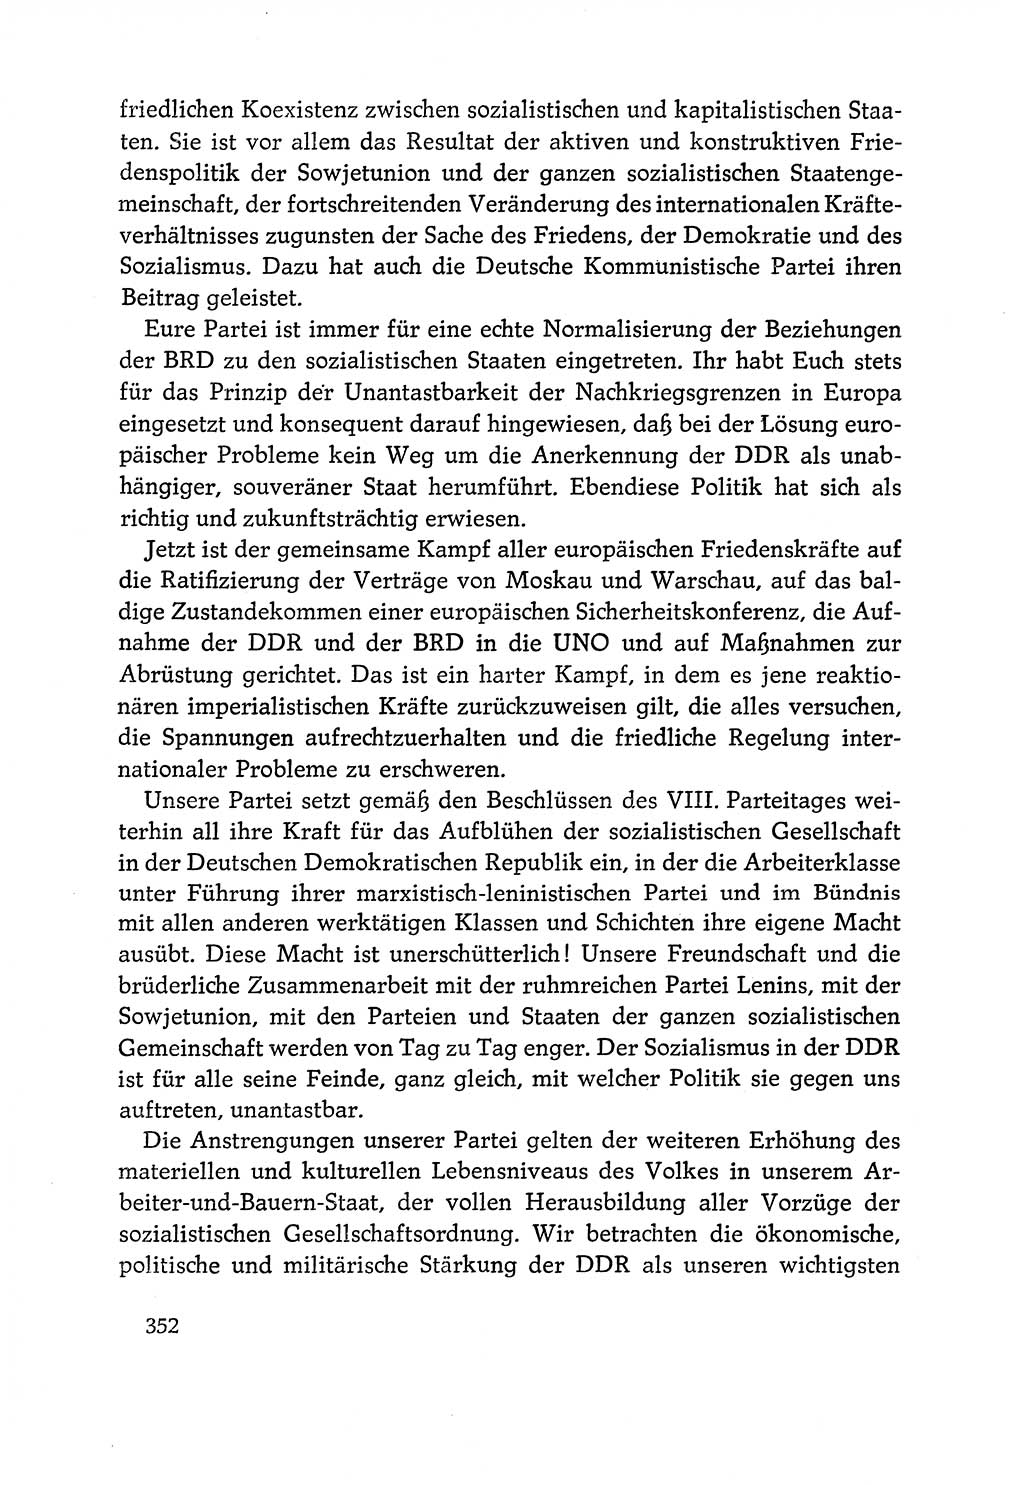 Dokumente der Sozialistischen Einheitspartei Deutschlands (SED) [Deutsche Demokratische Republik (DDR)] 1970-1971, Seite 352 (Dok. SED DDR 1970-1971, S. 352)